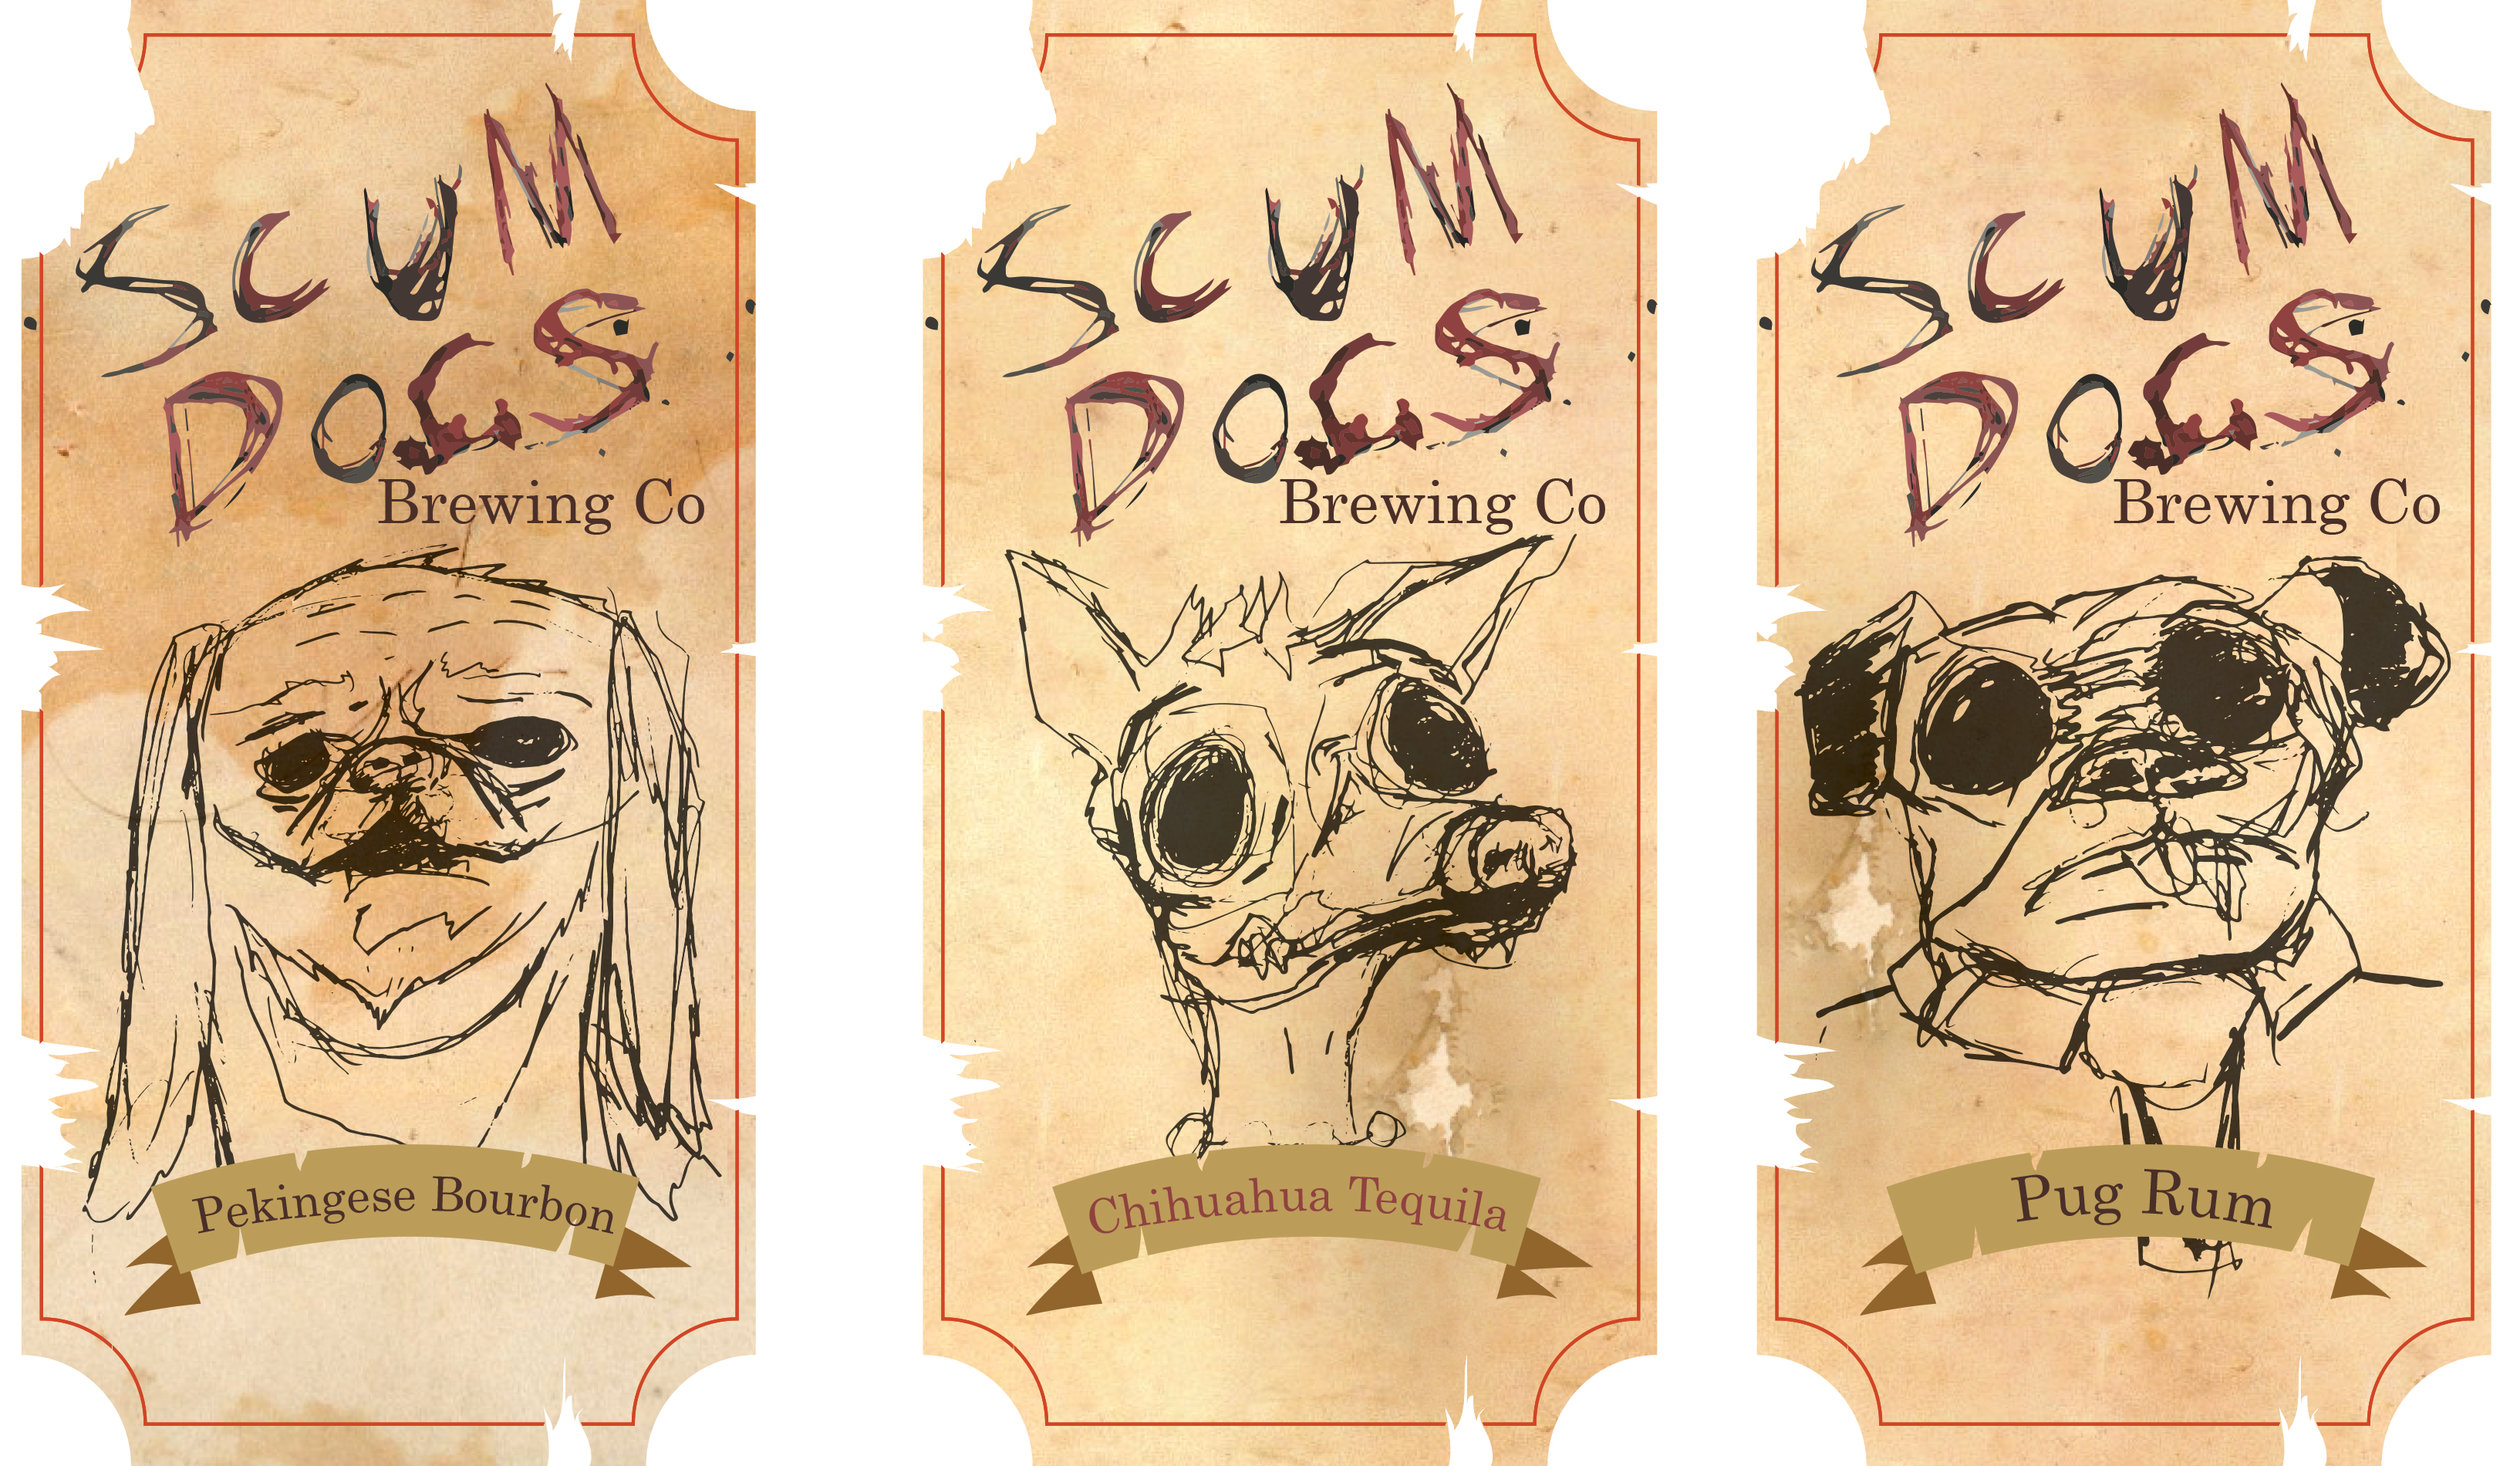 Scum Dogs. Label Design